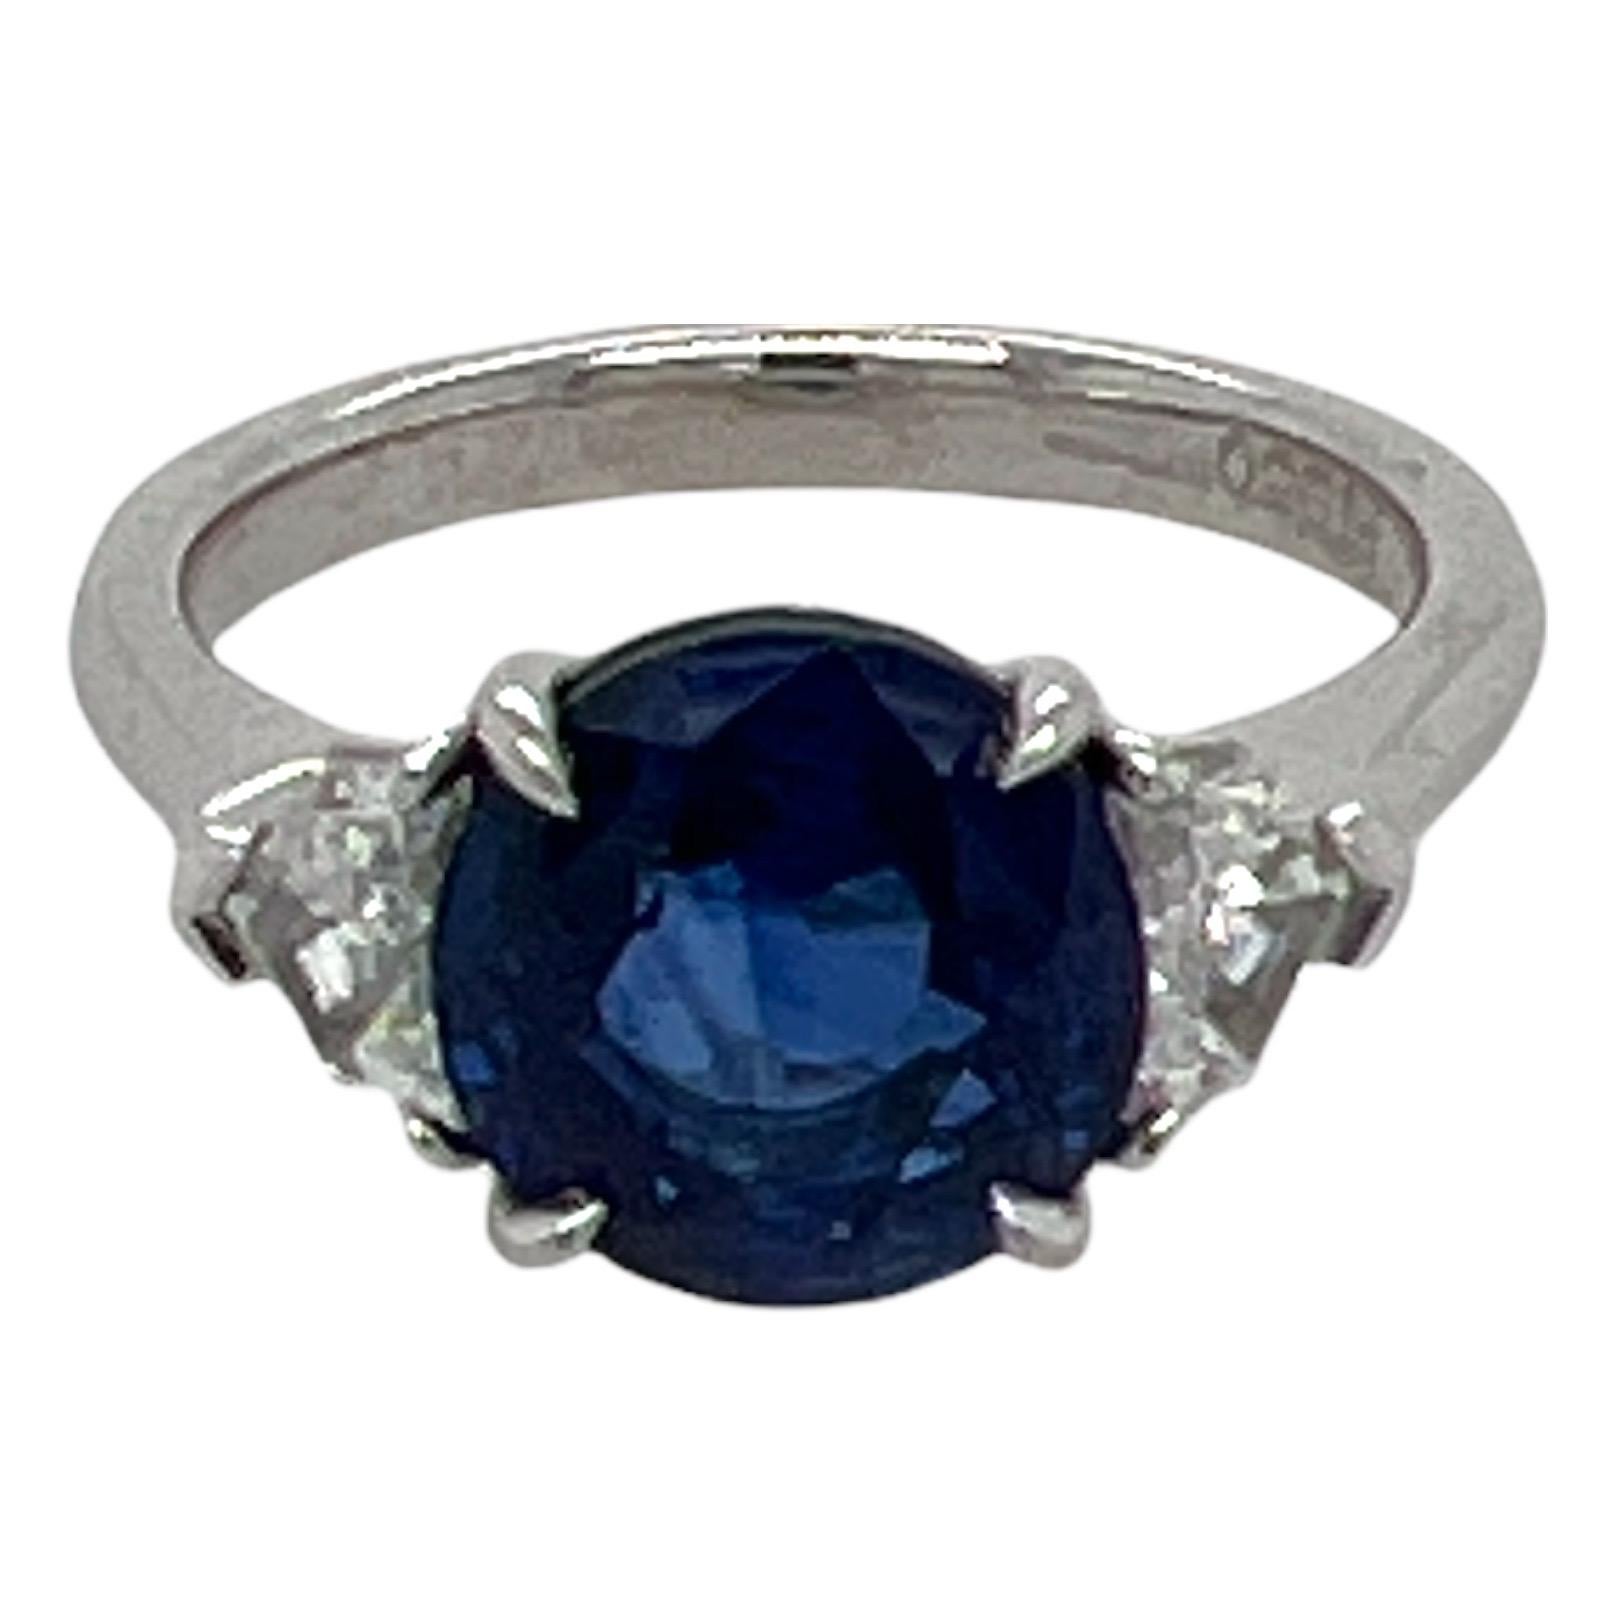 Atemberaubender Ring mit einem blauen Ceylon-Saphir und Diamanten, handgefertigt in Platin. Der Ring ist mit einem 3,60 Karat schweren, runden, lebhaften blauen Saphir besetzt, der von 2 Diamanten im Schildschliff flankiert wird. Die beiden